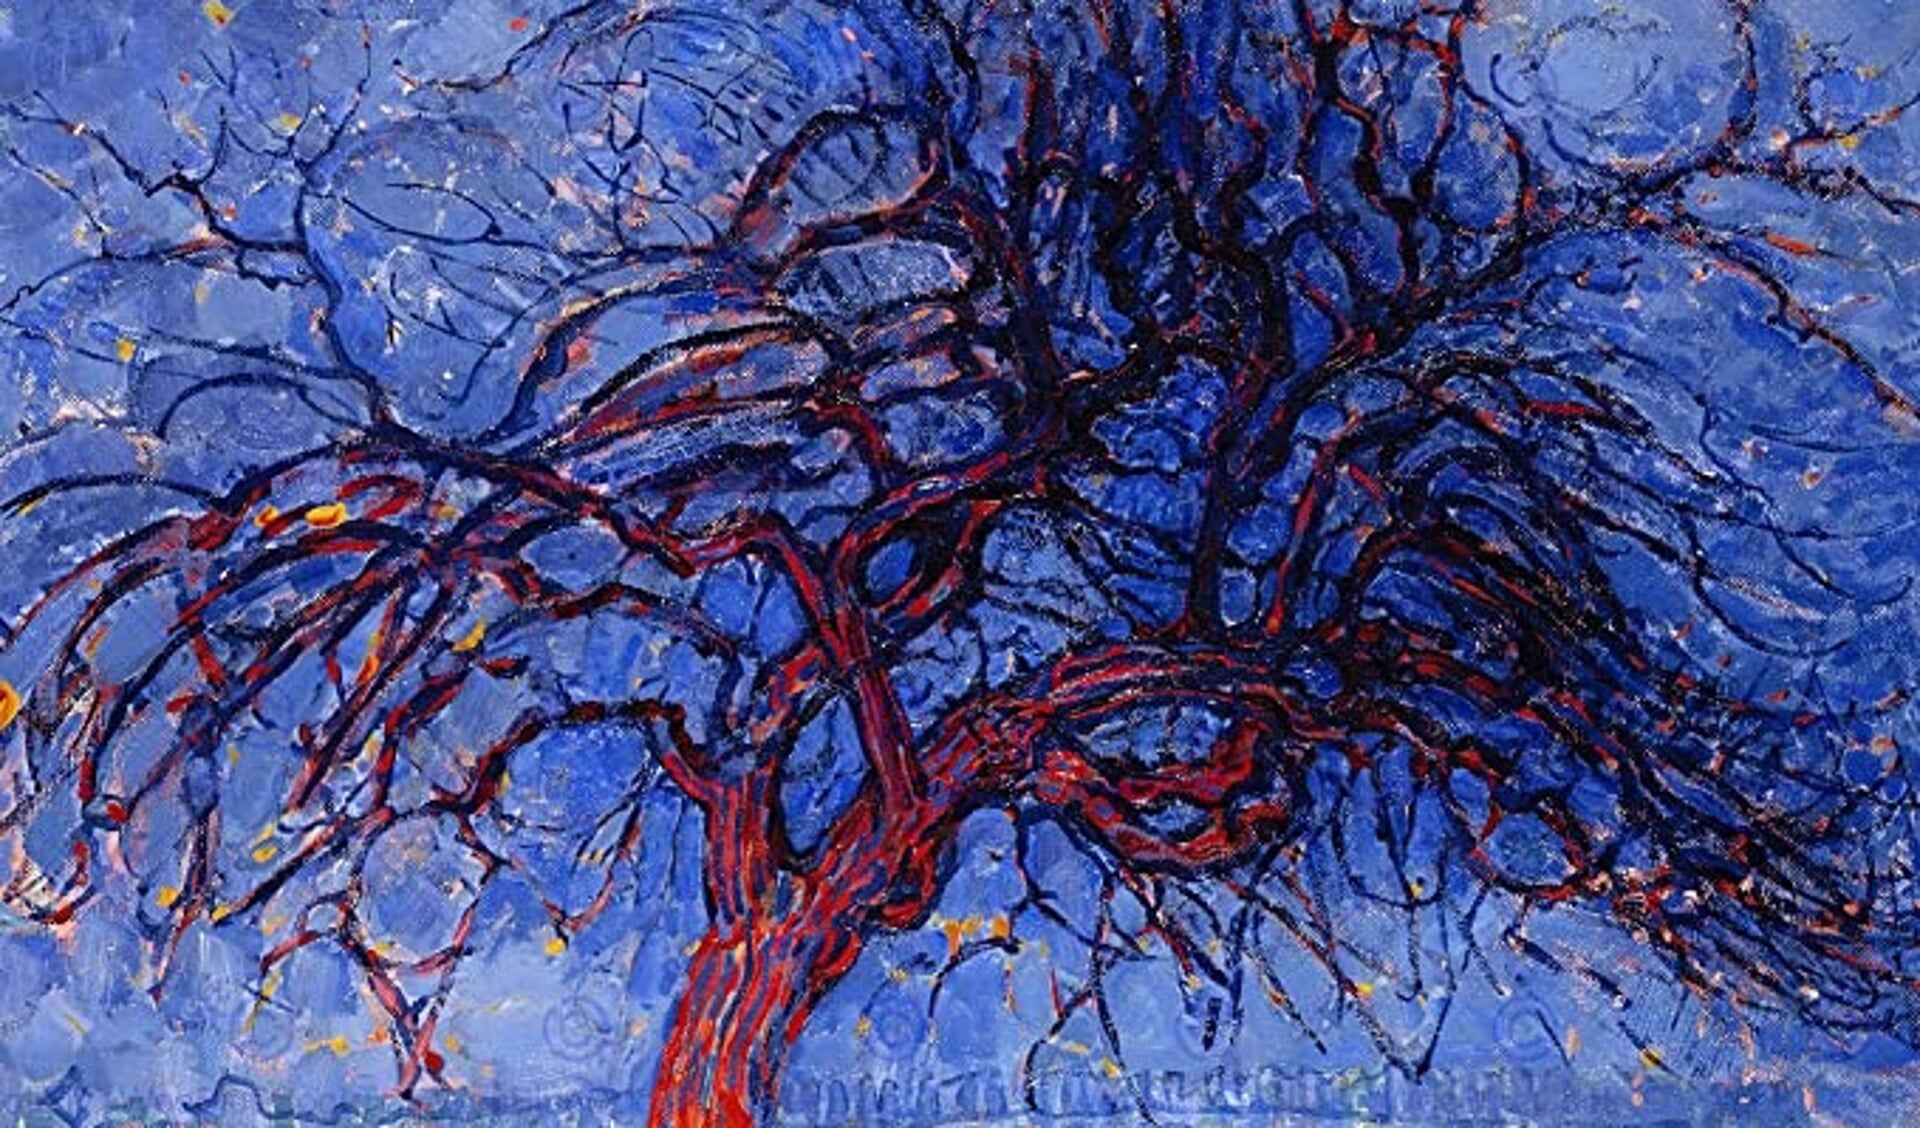 Met zijn schilderij 'Avond; De rode boom' brak Mondriaan volgens kenners voorgoed met zijn naturalistische stijl.